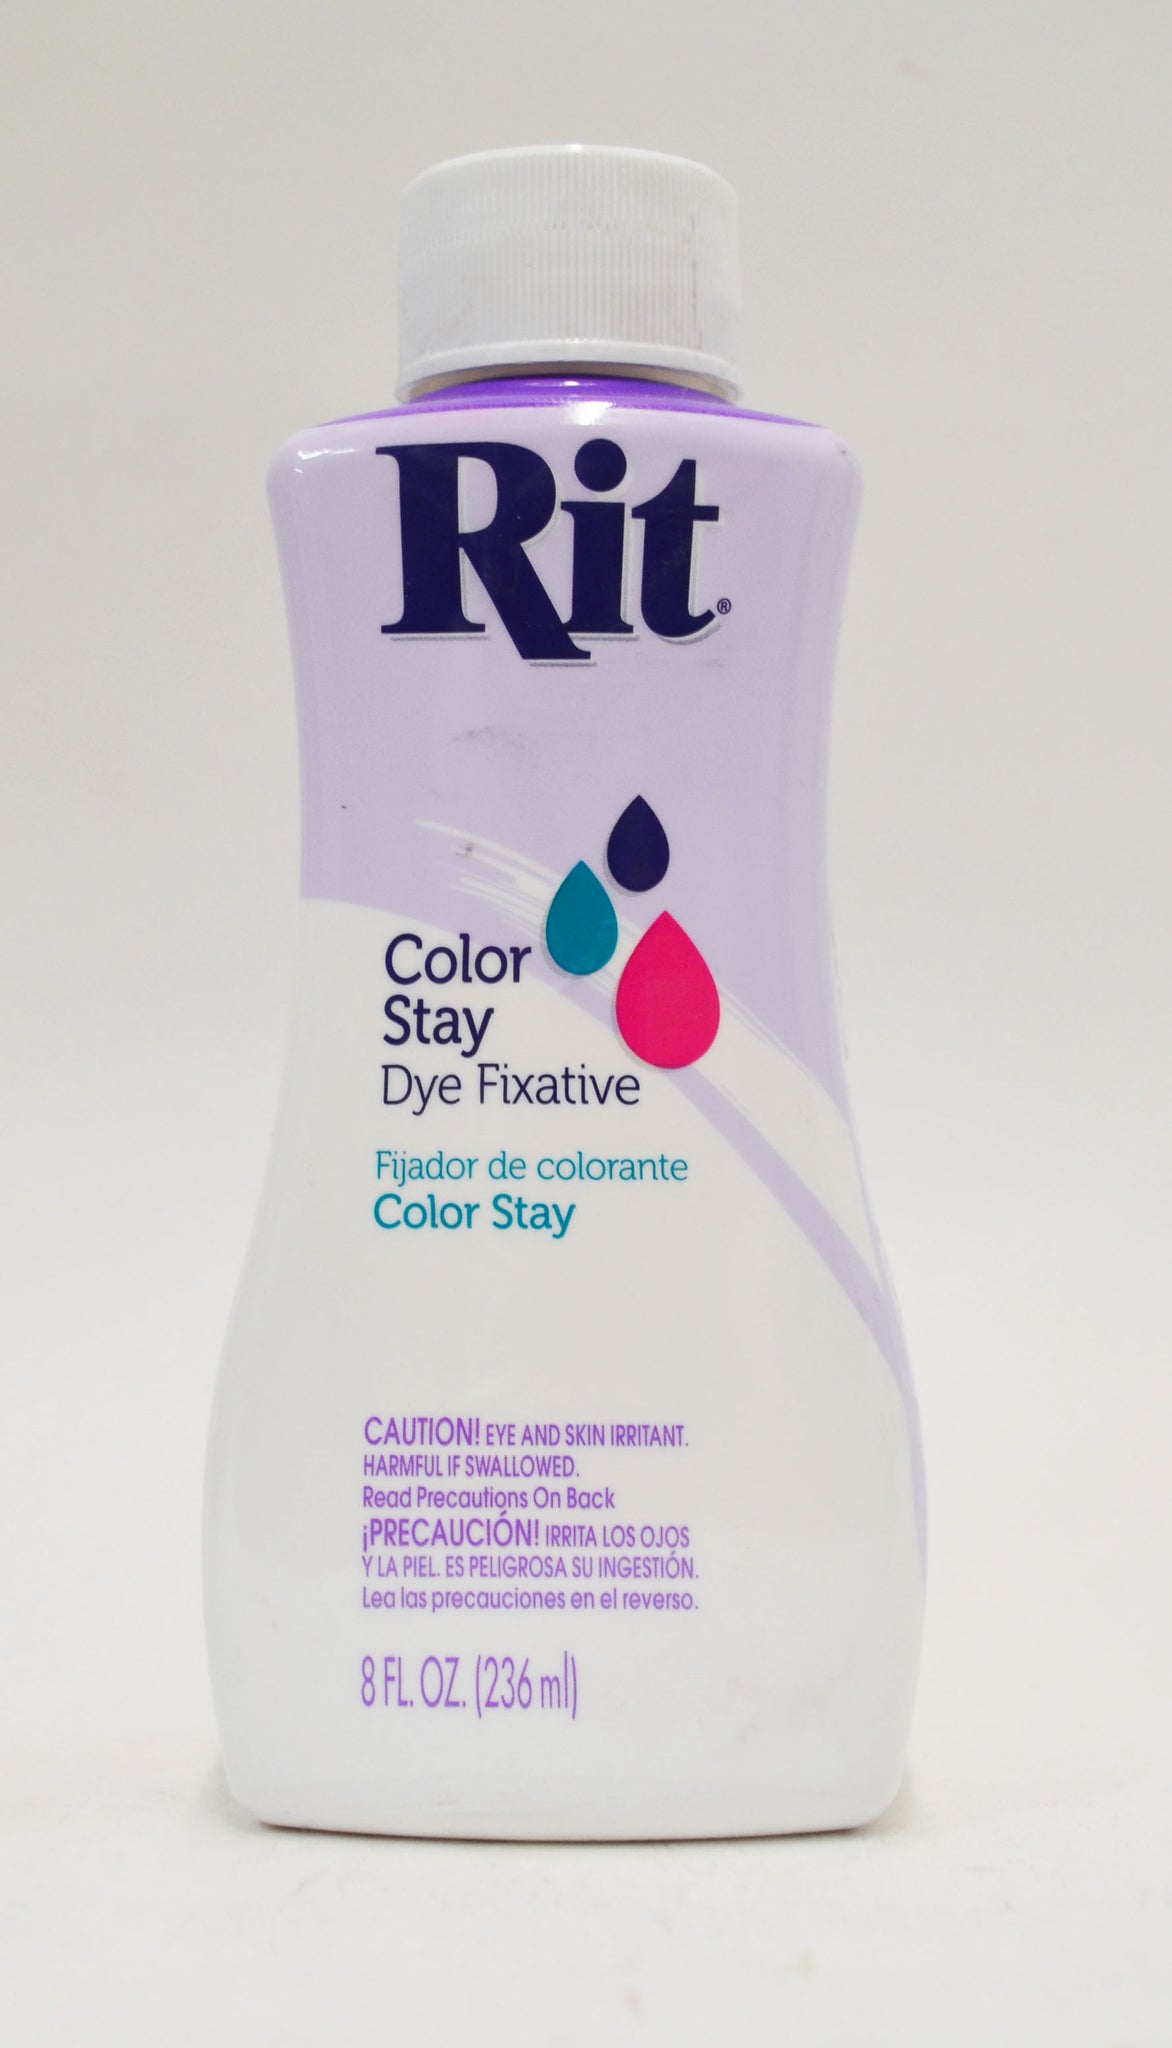 Rit Dye RIT COLORSTAY, 8 fl oz, Clear